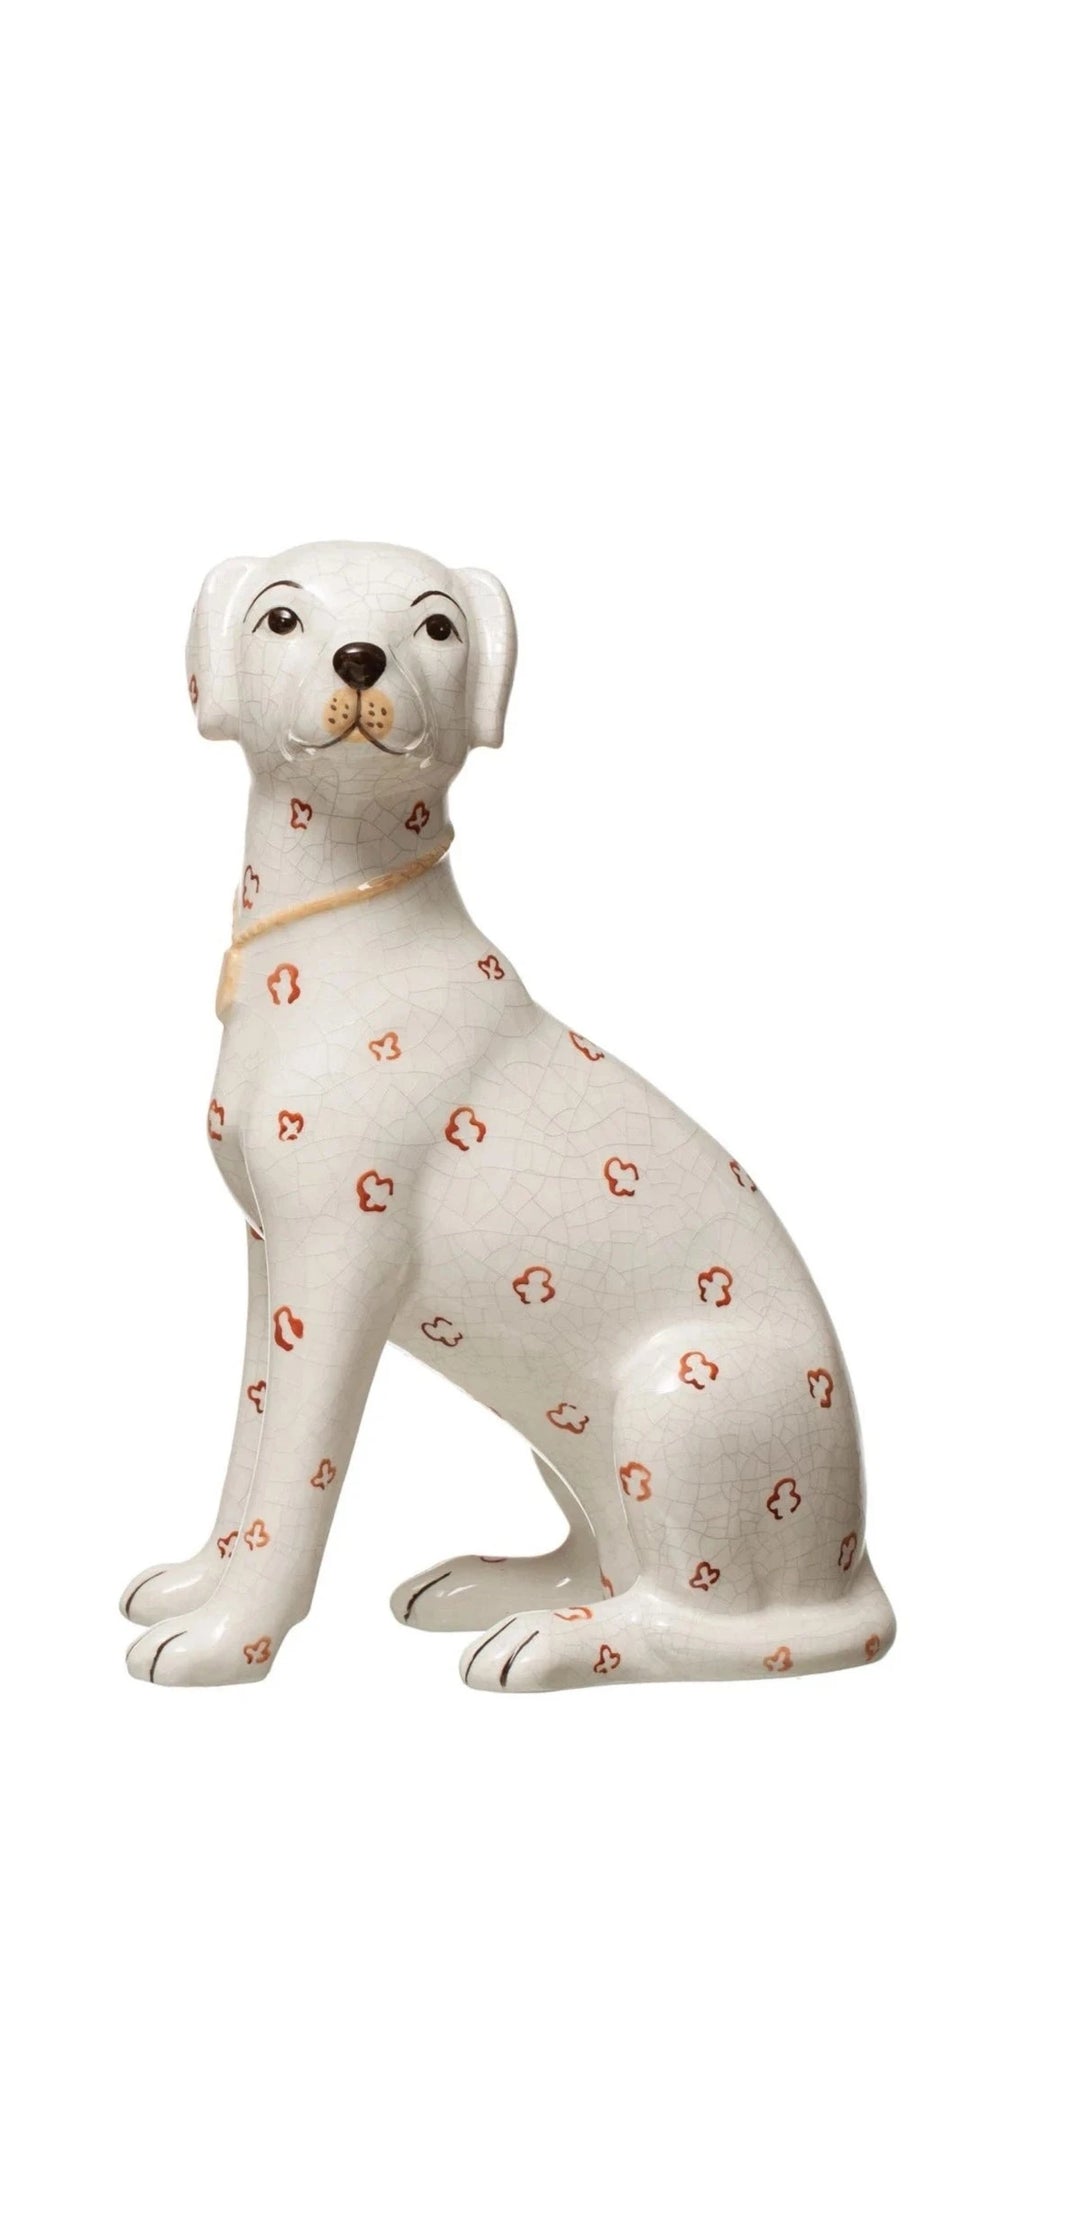 Hand-Painted Ceramic Dog - Crackle Finish